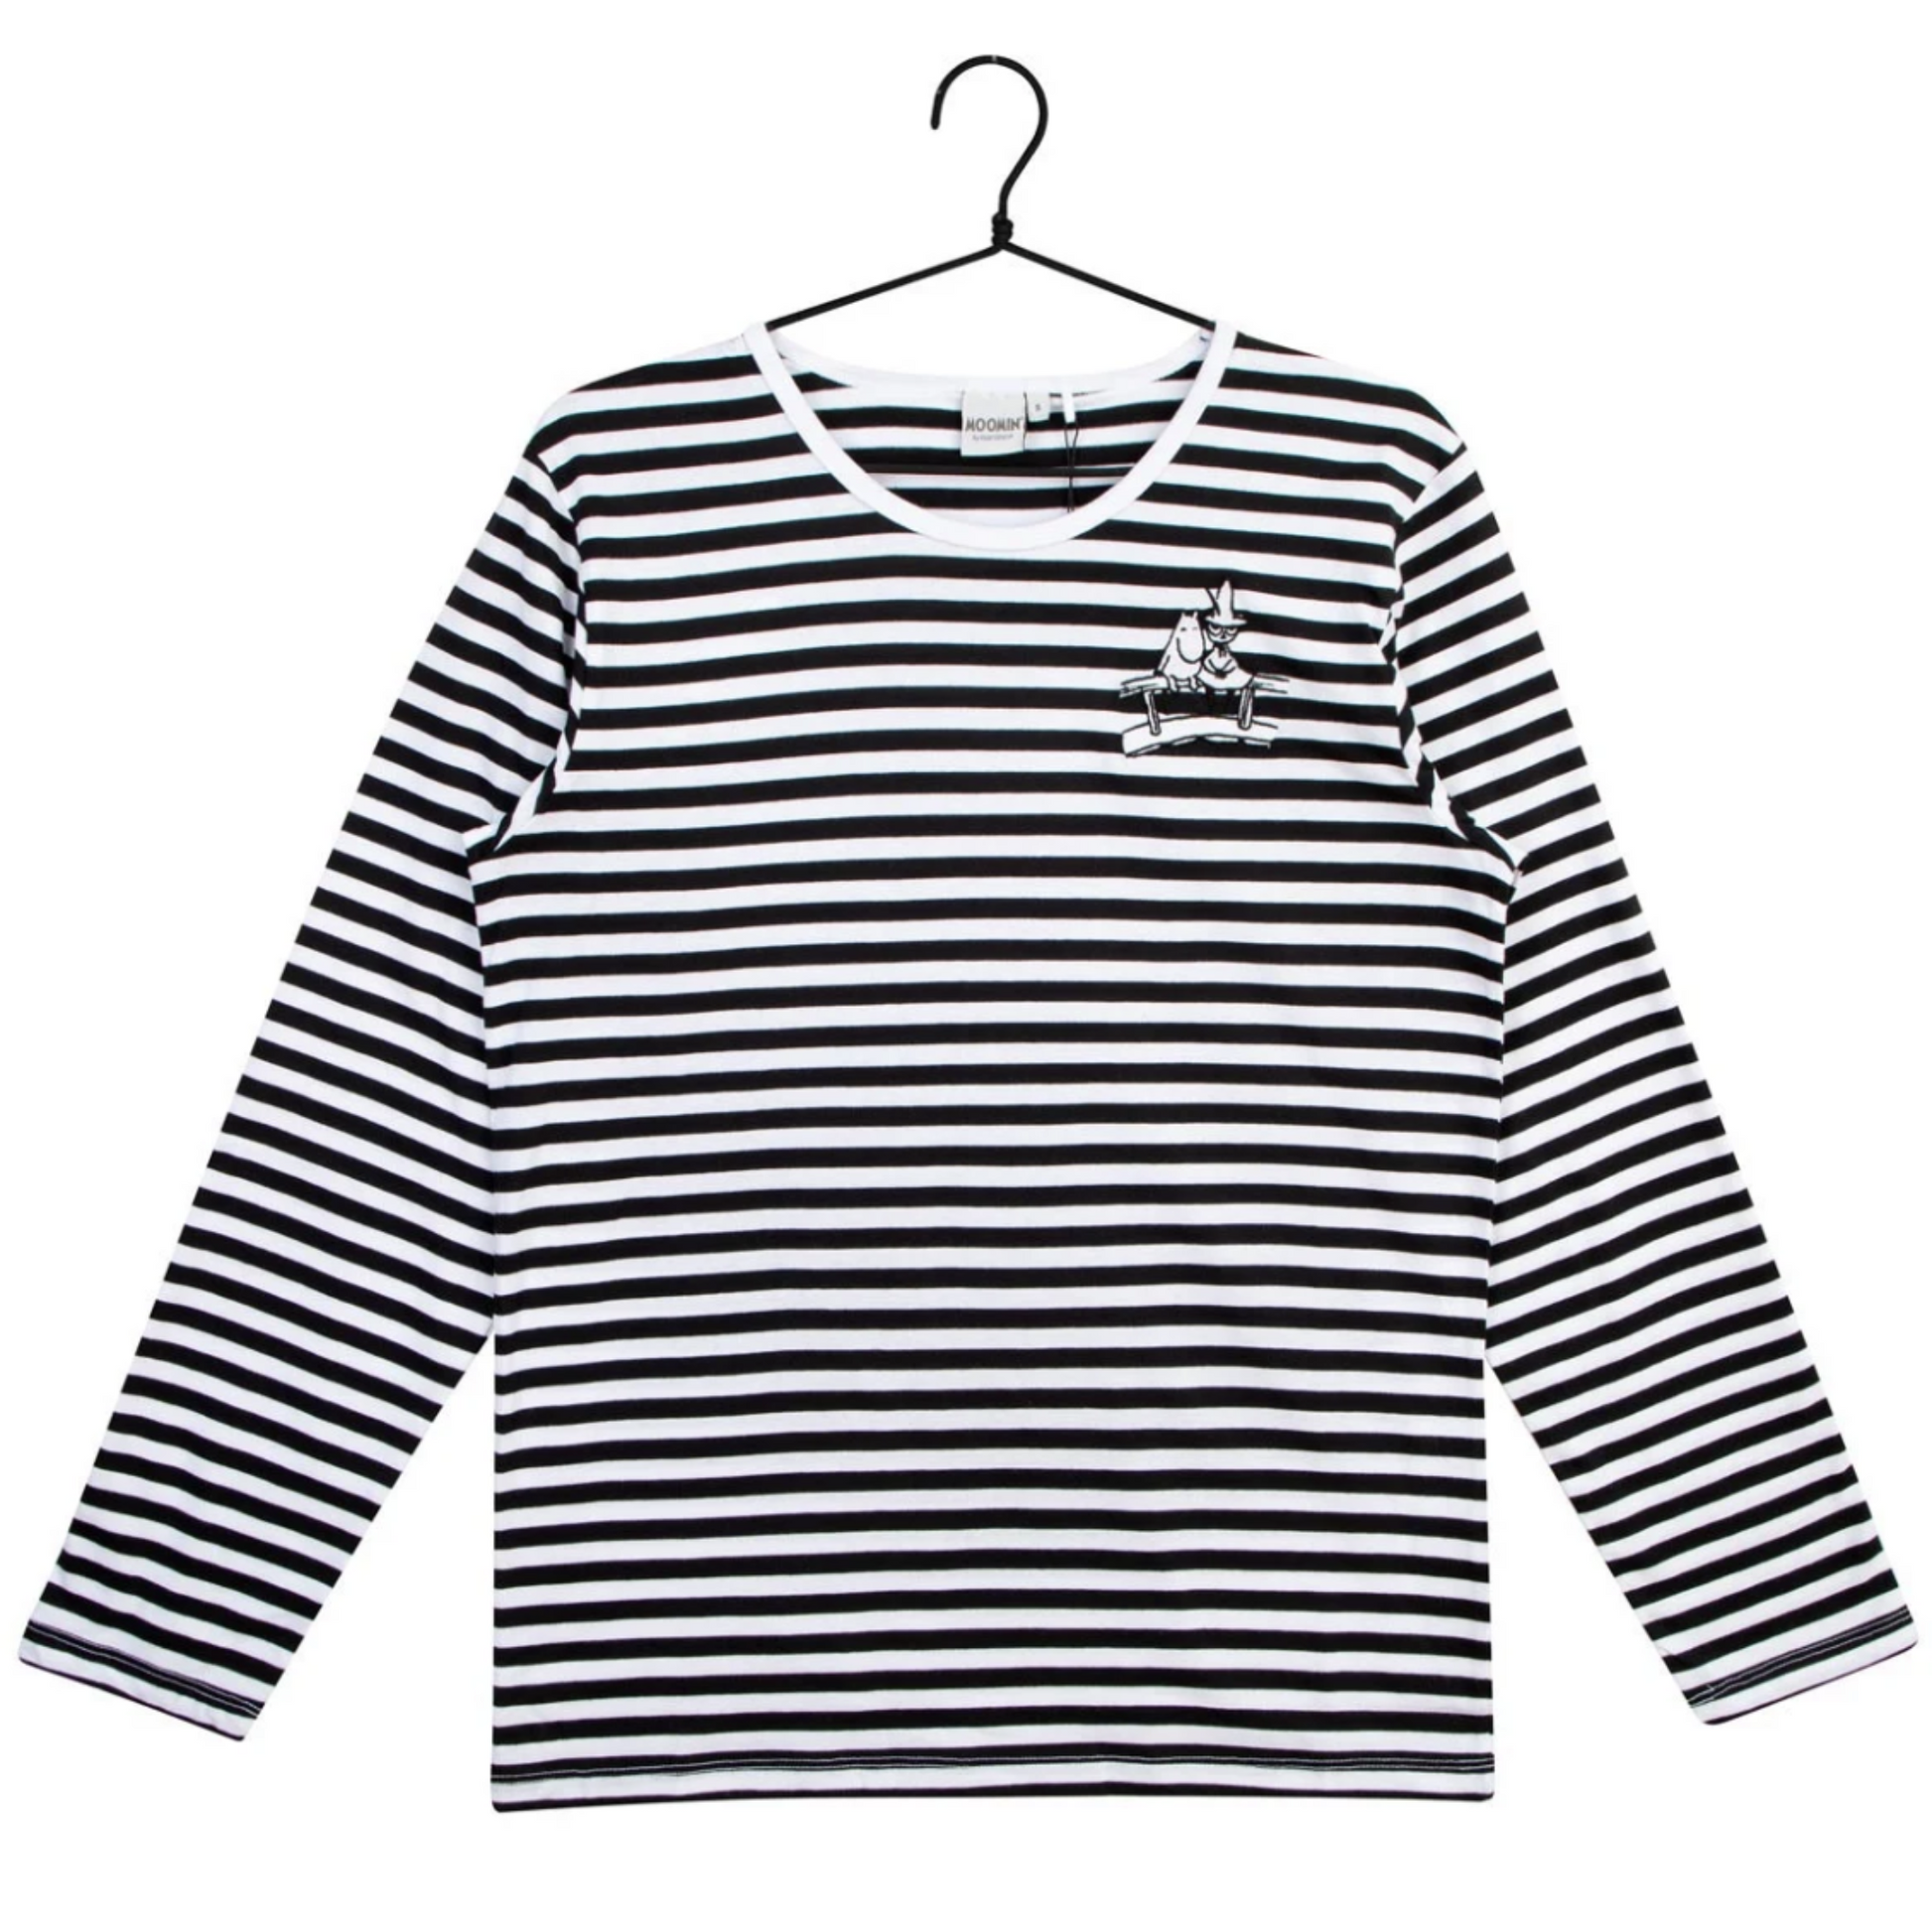 Moomin Kuisma Bridge Shirt, Black-White (8362691166495)